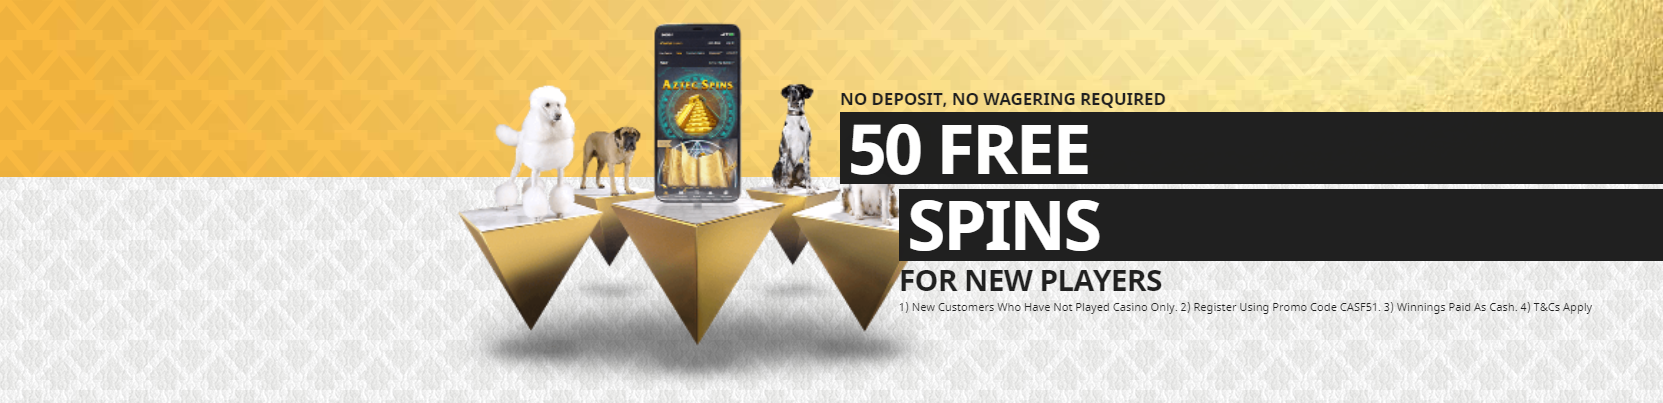 bookmaker betfair online casino welcome bonus offer